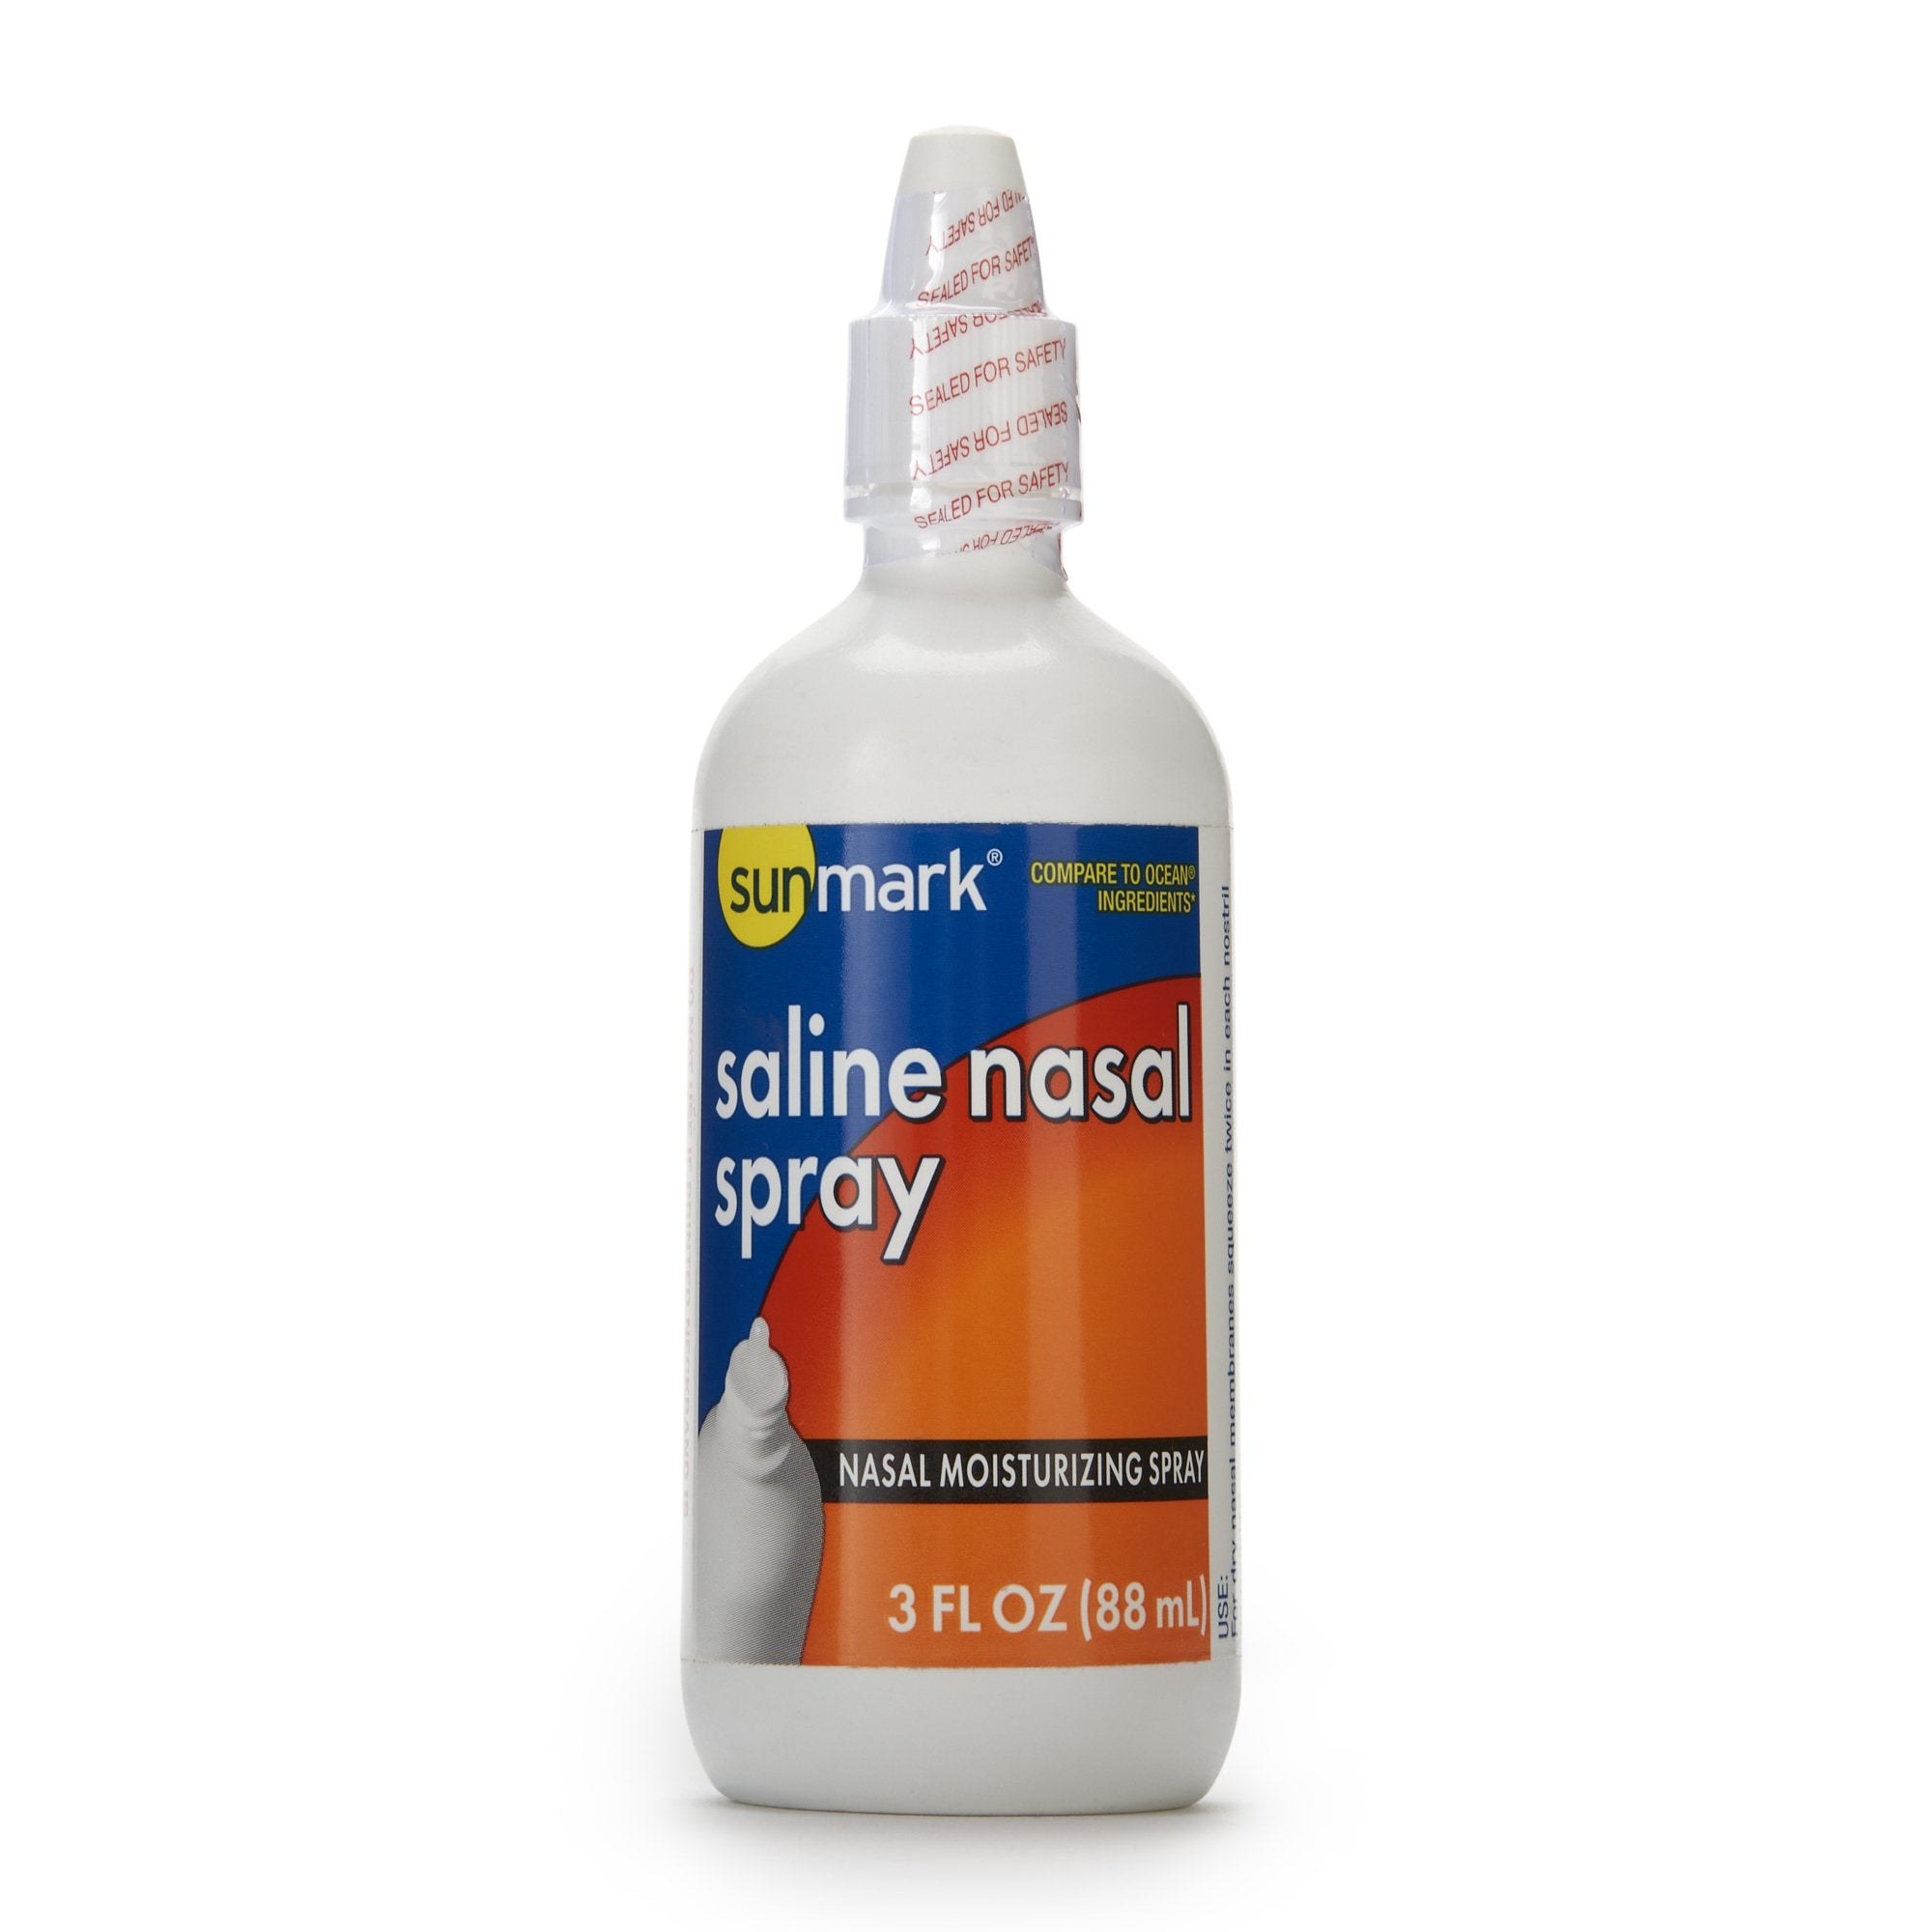 Saline Nasal Spray sunmark® 0.65% Strength 3 oz.